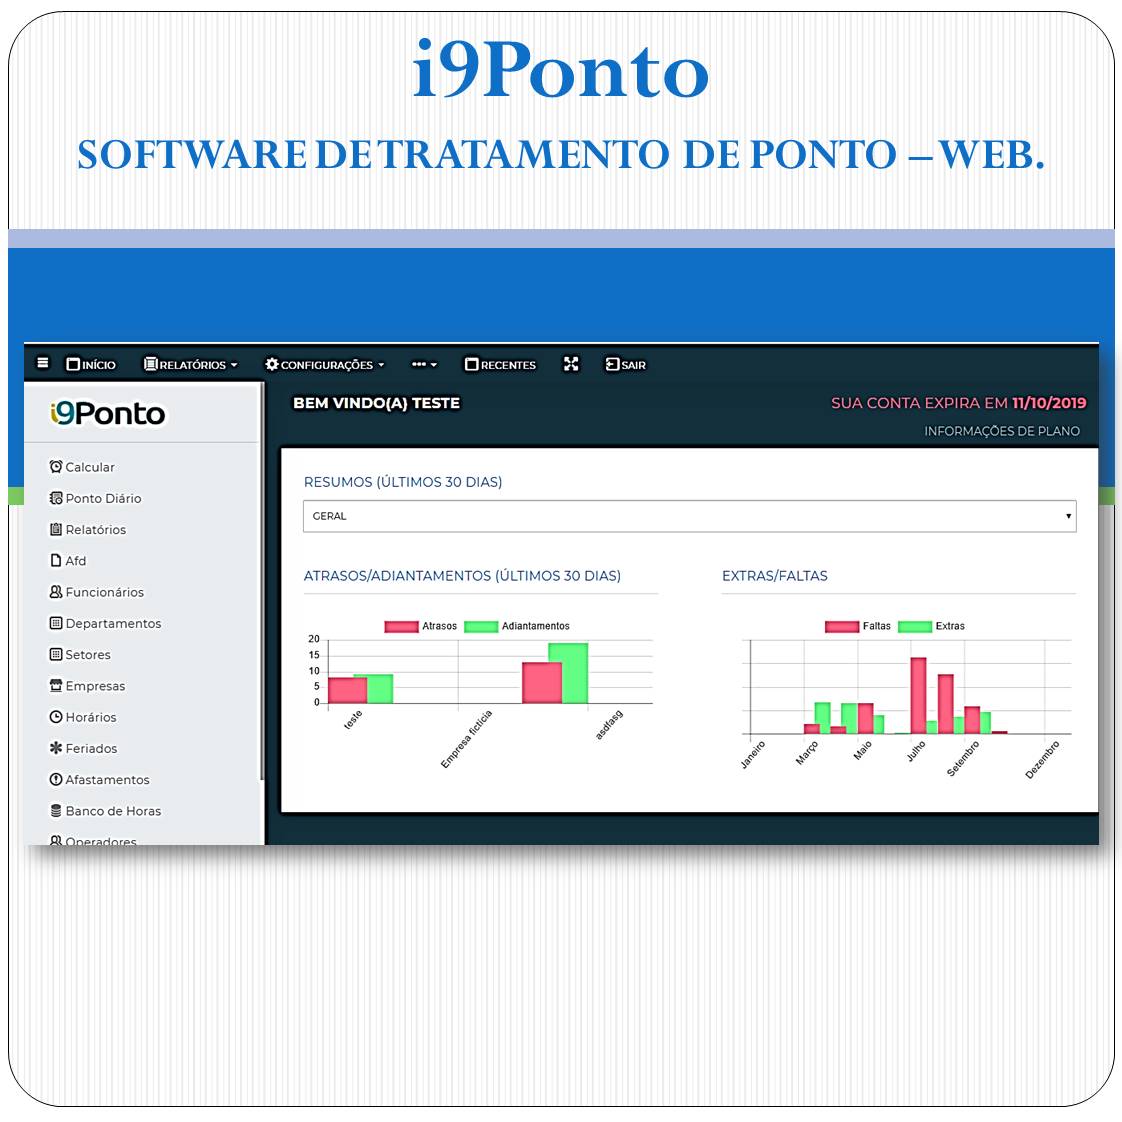 Software de Tratamento de Ponto Web - i9Ponto